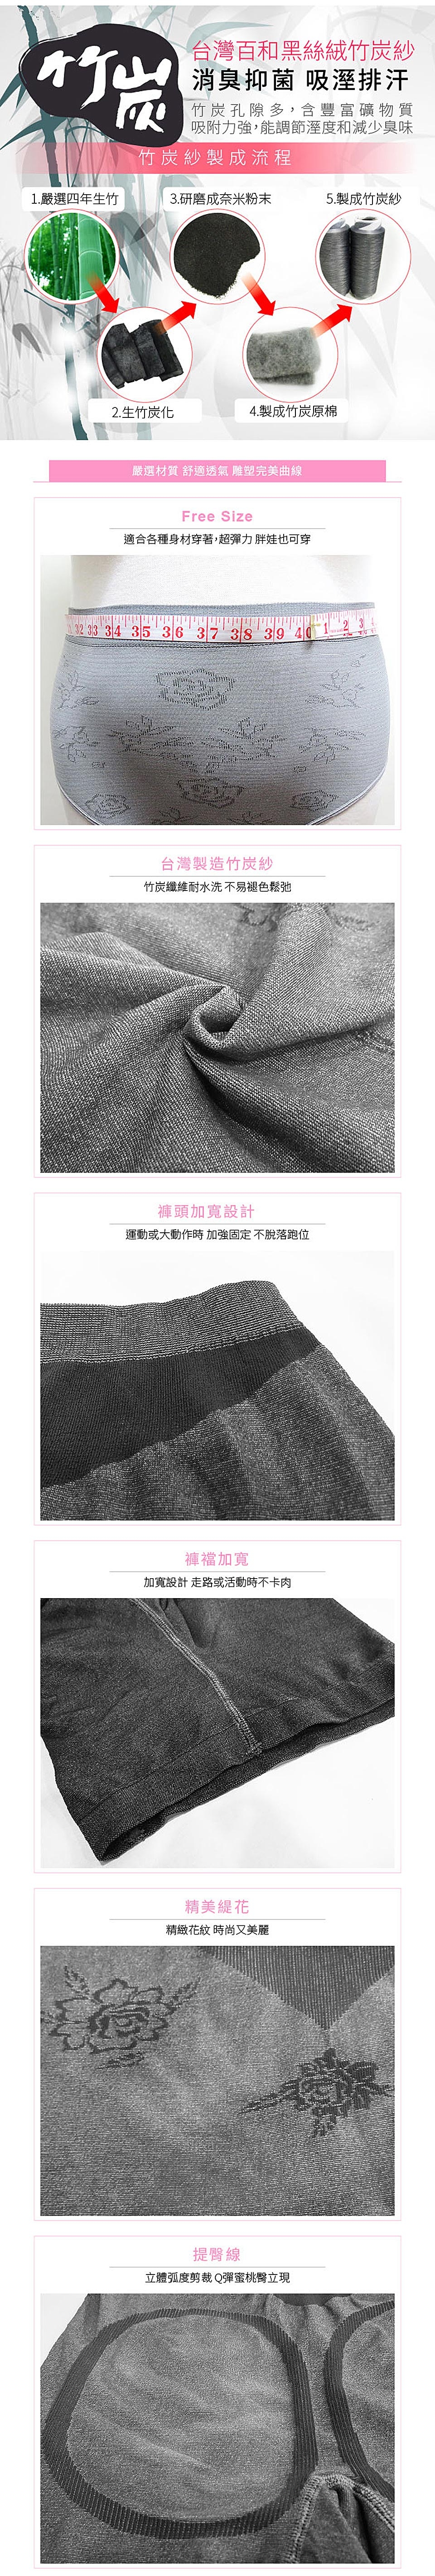 【JS嚴選】台灣製竹炭銀纖維無縫提臀內褲(銀纖維褲*1+竹炭褲*2)